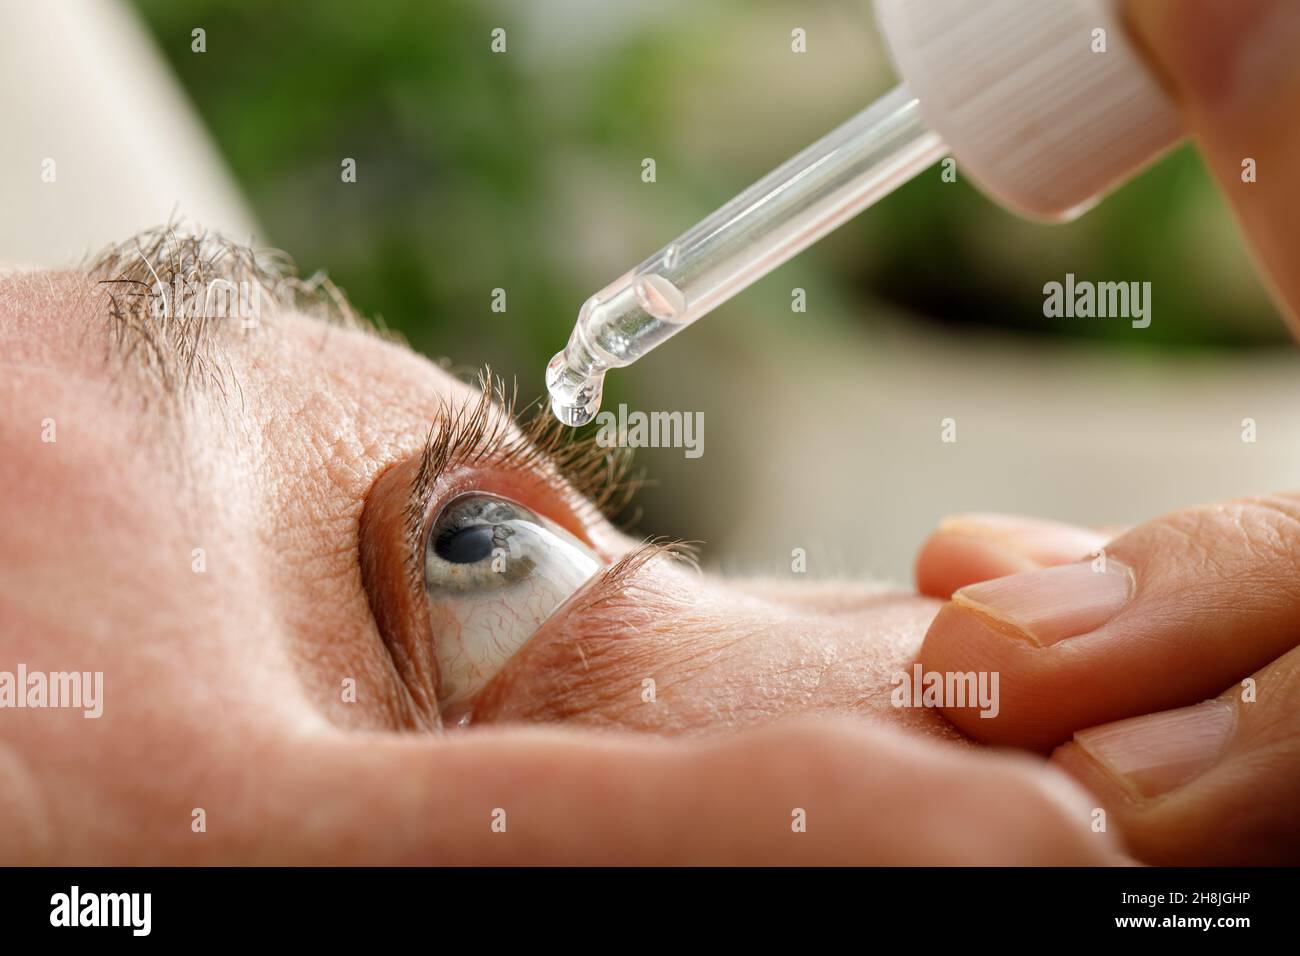 Ein Mann befeuchtet seine Augen, bevor er Kontaktlinsen einführt. Tropfen in den Augen durch Reizungen, Rötungen und Allergien. Stockfoto